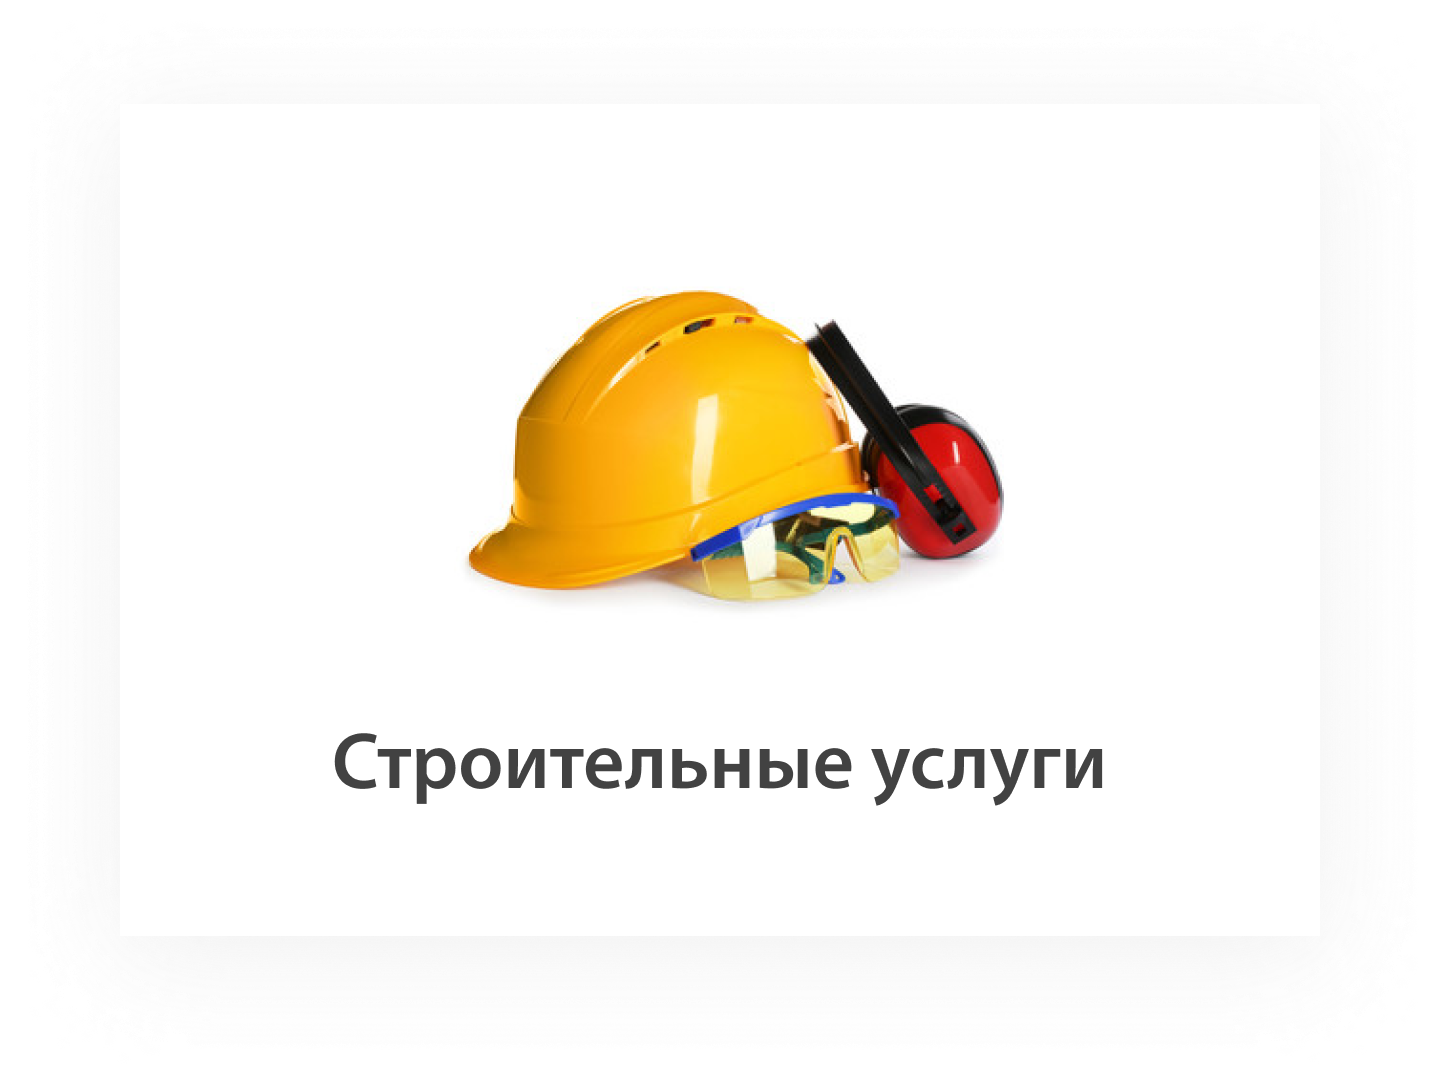 Сроительные услуги